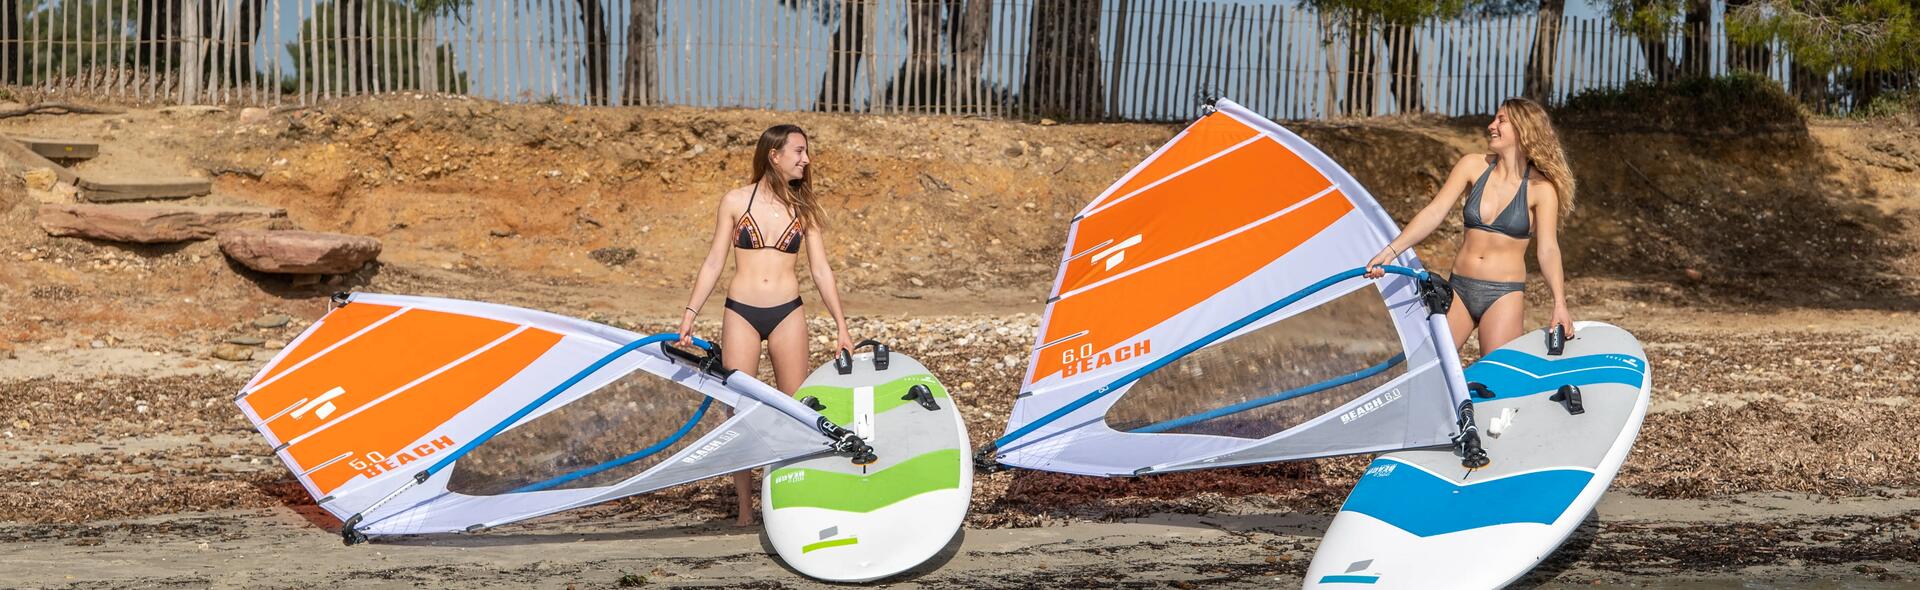 Quelle planche de windsurf choisir ?